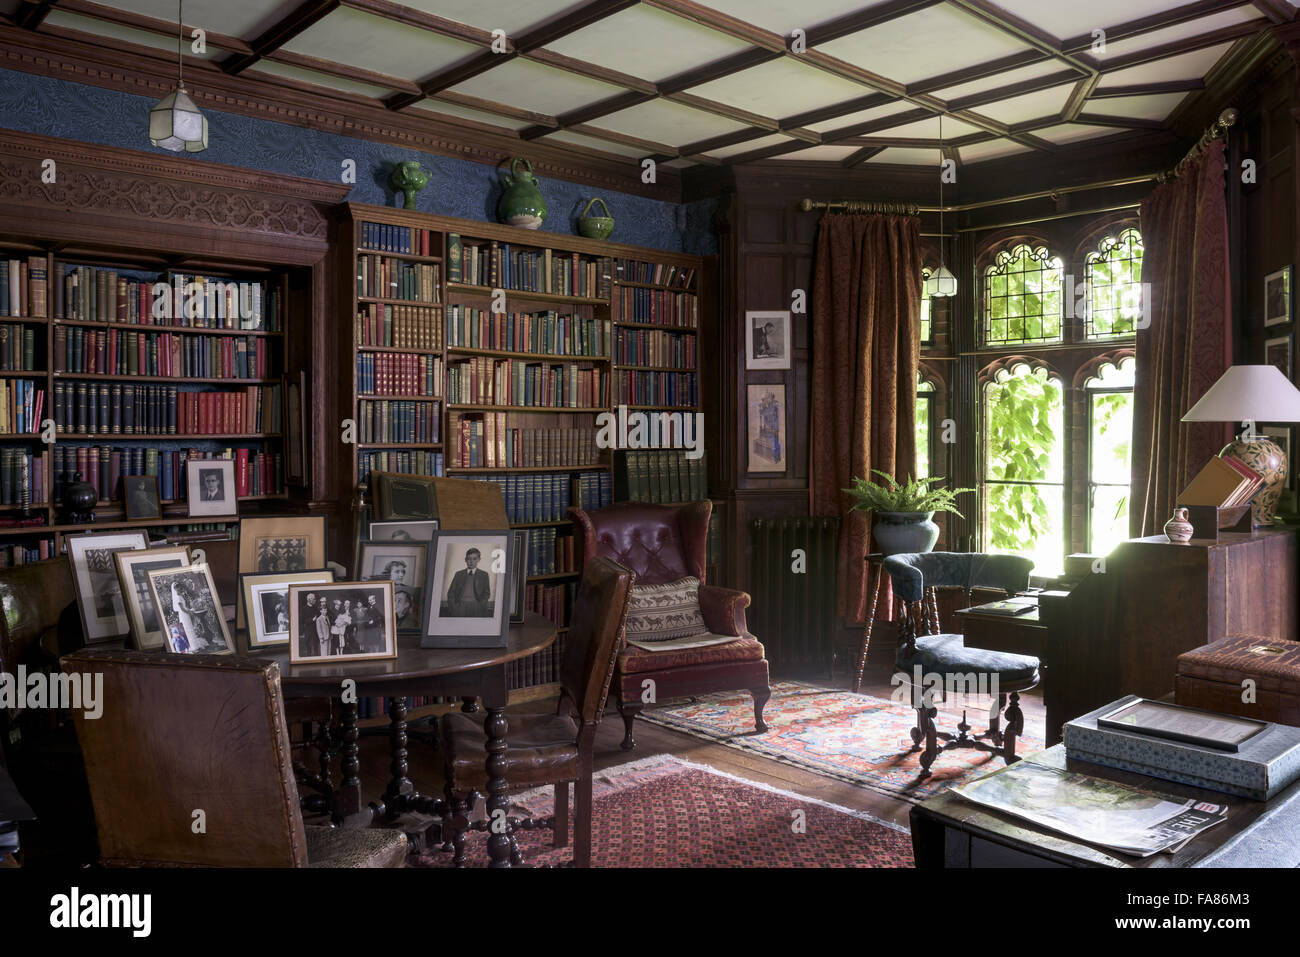 Une vue de l'intérieur de Wightwick Manor et Gardens, West Midlands. Wightwick Manor a commencé en 1887 dans la 'vieille' style anglais, et possède une superbe collection de tissus de William Morris et peintures préraphaélites. Banque D'Images